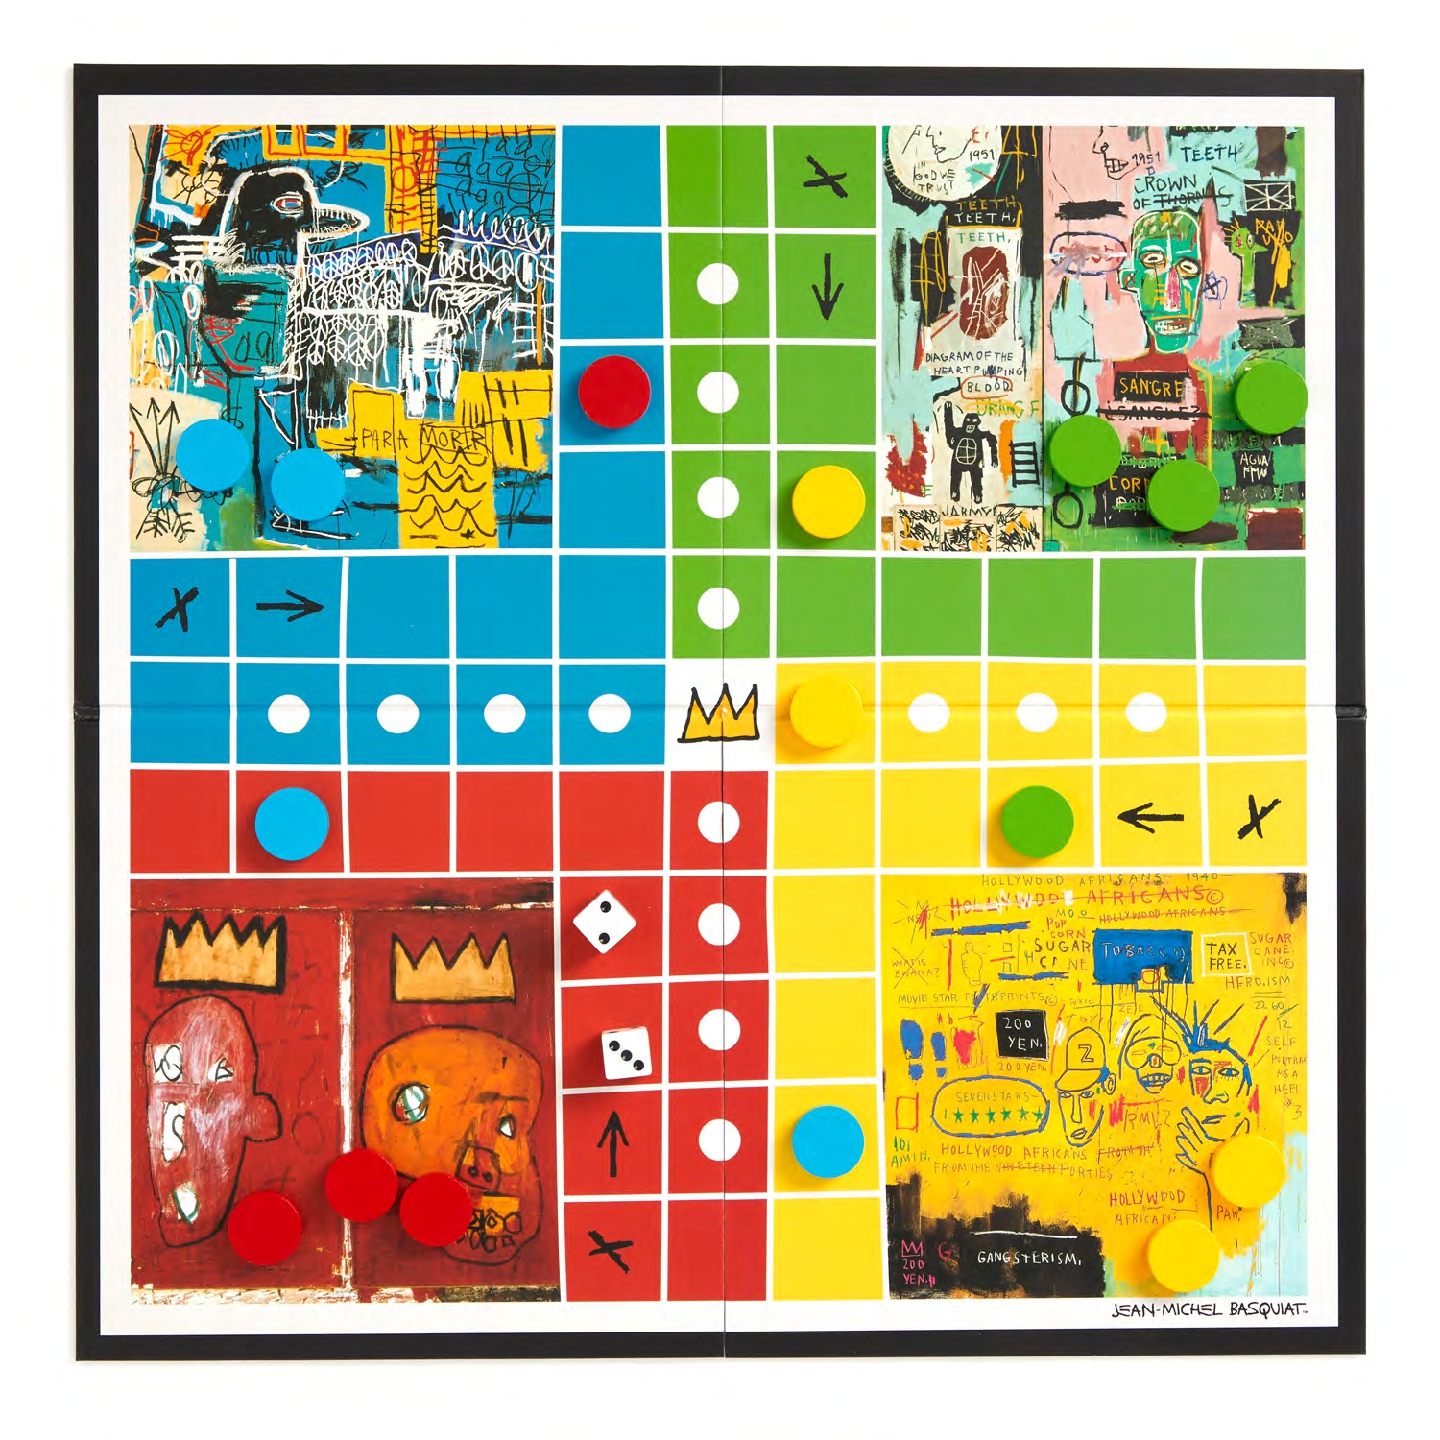 Jean-Michel Basquiat Ludo Classic Board Game